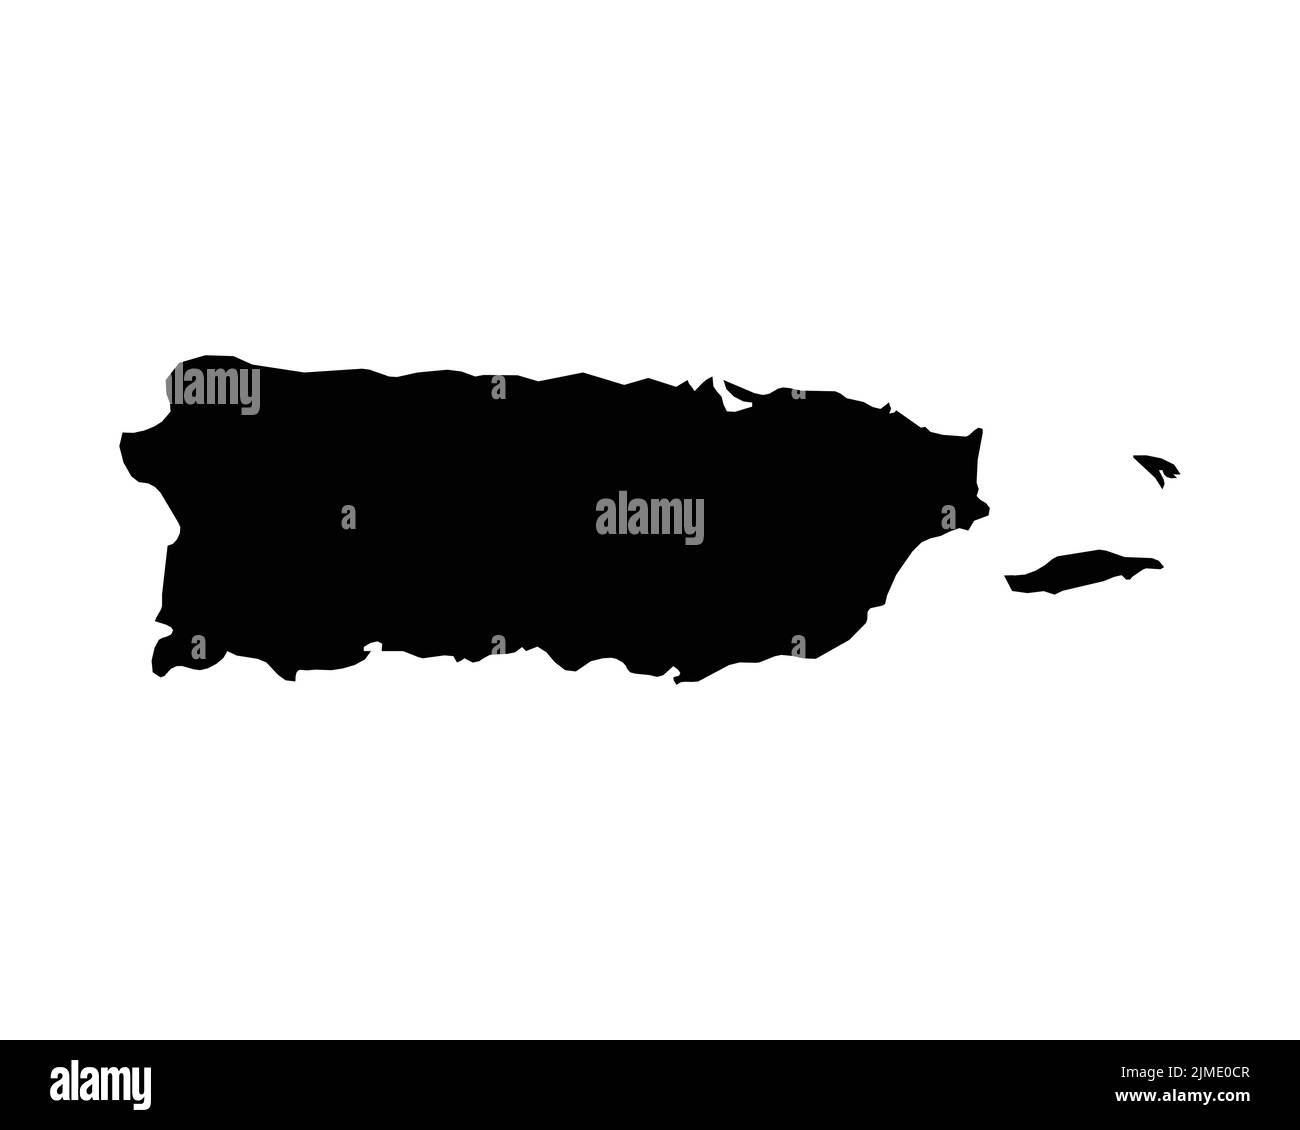 Puerto Rico-Karte. Karte Von Puerto Rico. Schwarz-Weiß PR US USA Territory Border Grenzlinie Umriss Geographie Form Vektor Illustration EPS Clipart Stock Vektor